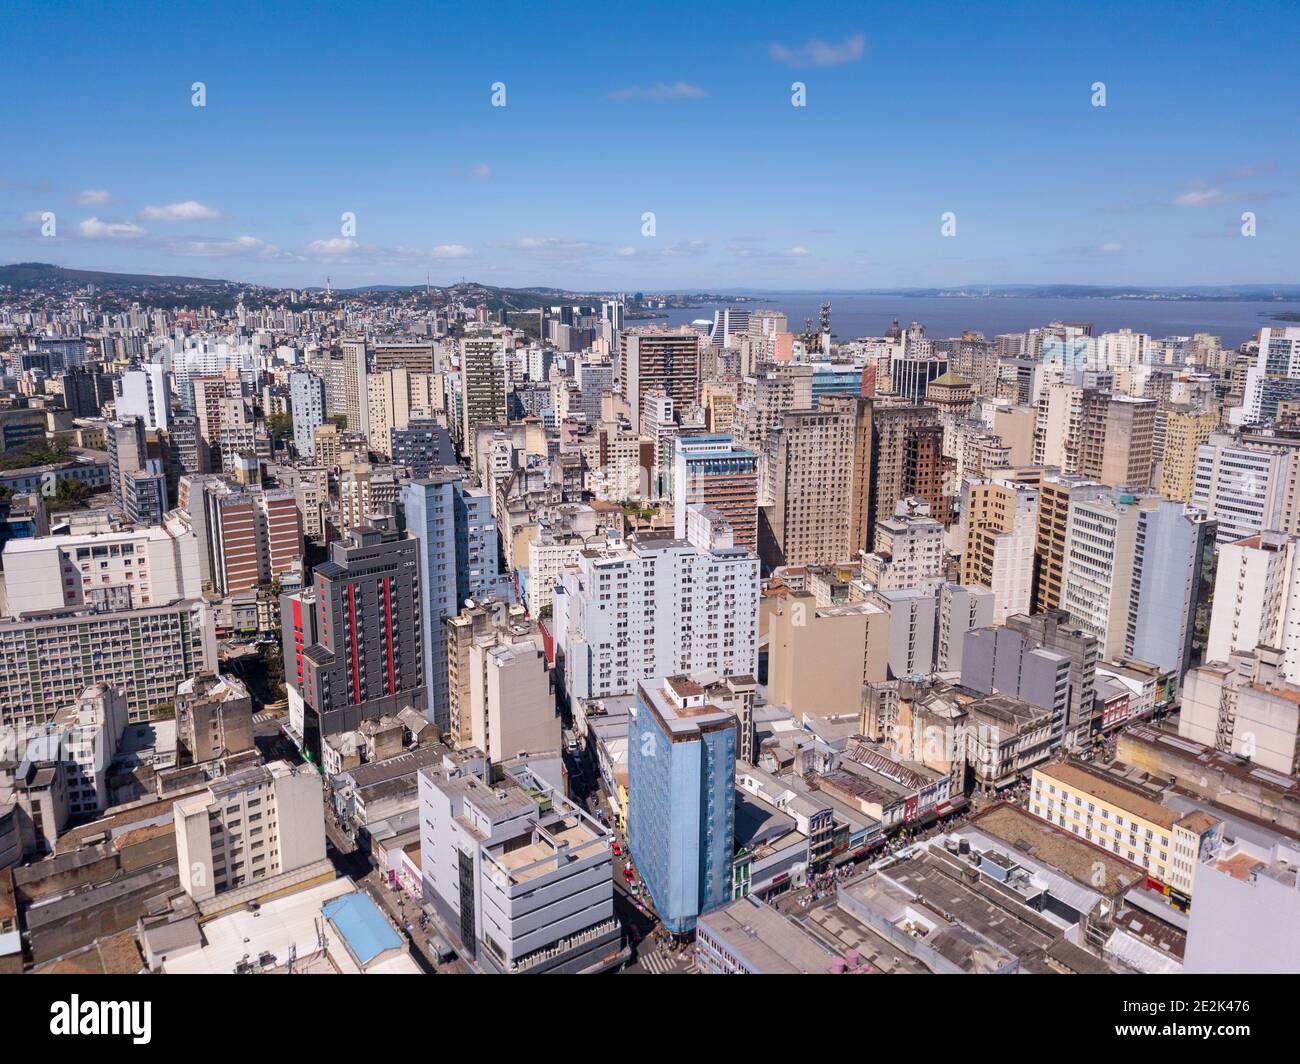 Drohne Luftaufnahme der Gebäude Skyline von Porto Alegre Stadt, Rio Grande do Sul Staat, Brasilien. Schöner sonniger Sommertag mit blauem Himmel. Konzept urban. Stockfoto